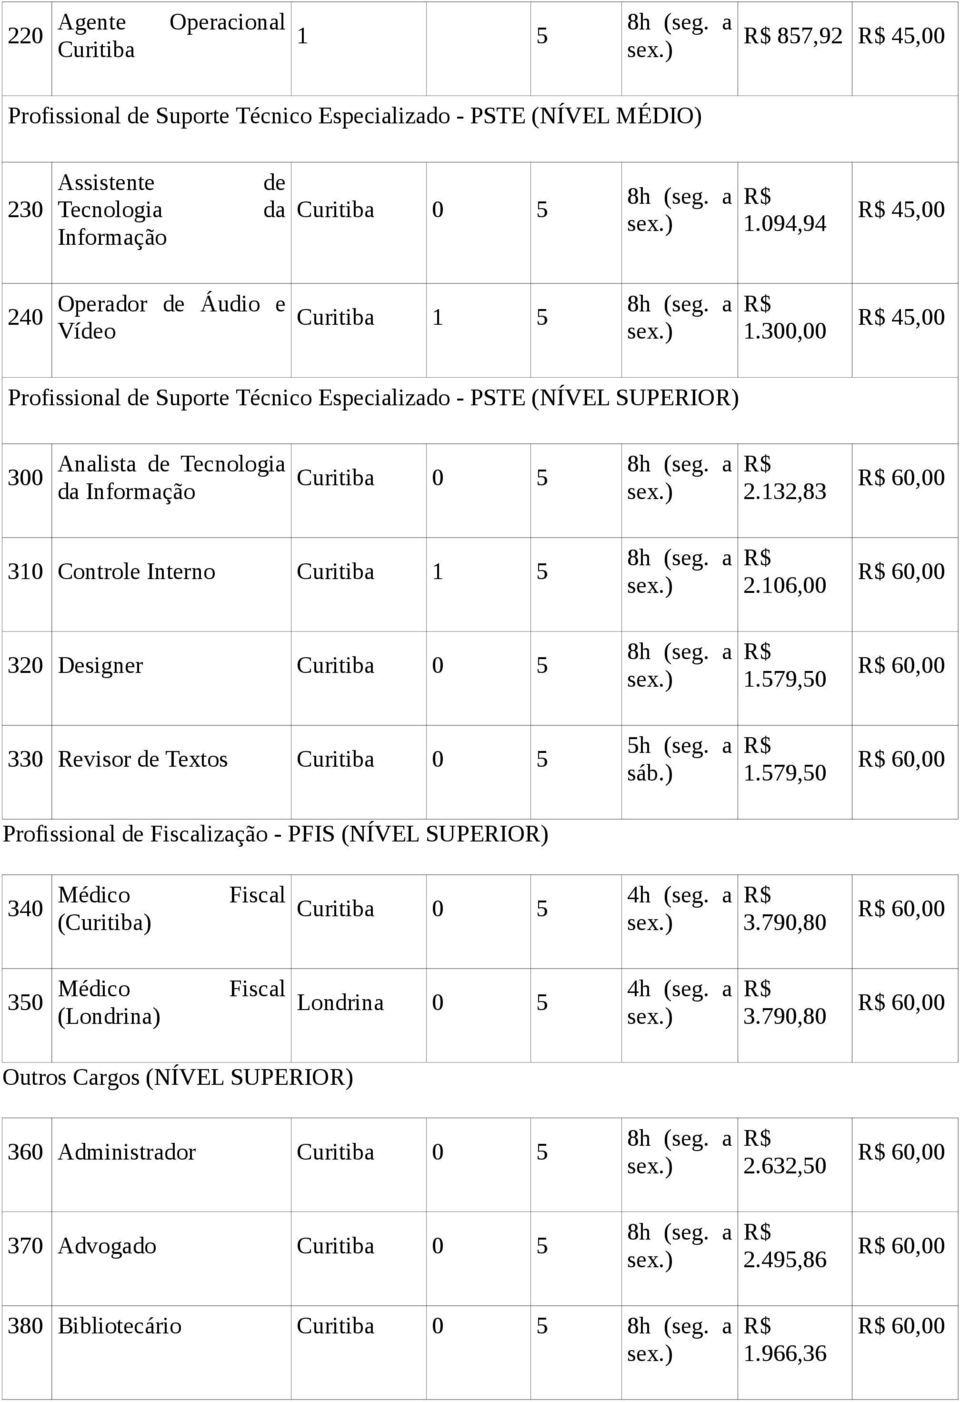 300,00 R$ 45,00 Profissional de Suporte Técnico Especializado - PSTE (NÍVEL SUPERIOR) 300 Analista de Tecnologia da Informação Curitiba 0 5 8h (seg. a R$ 2.